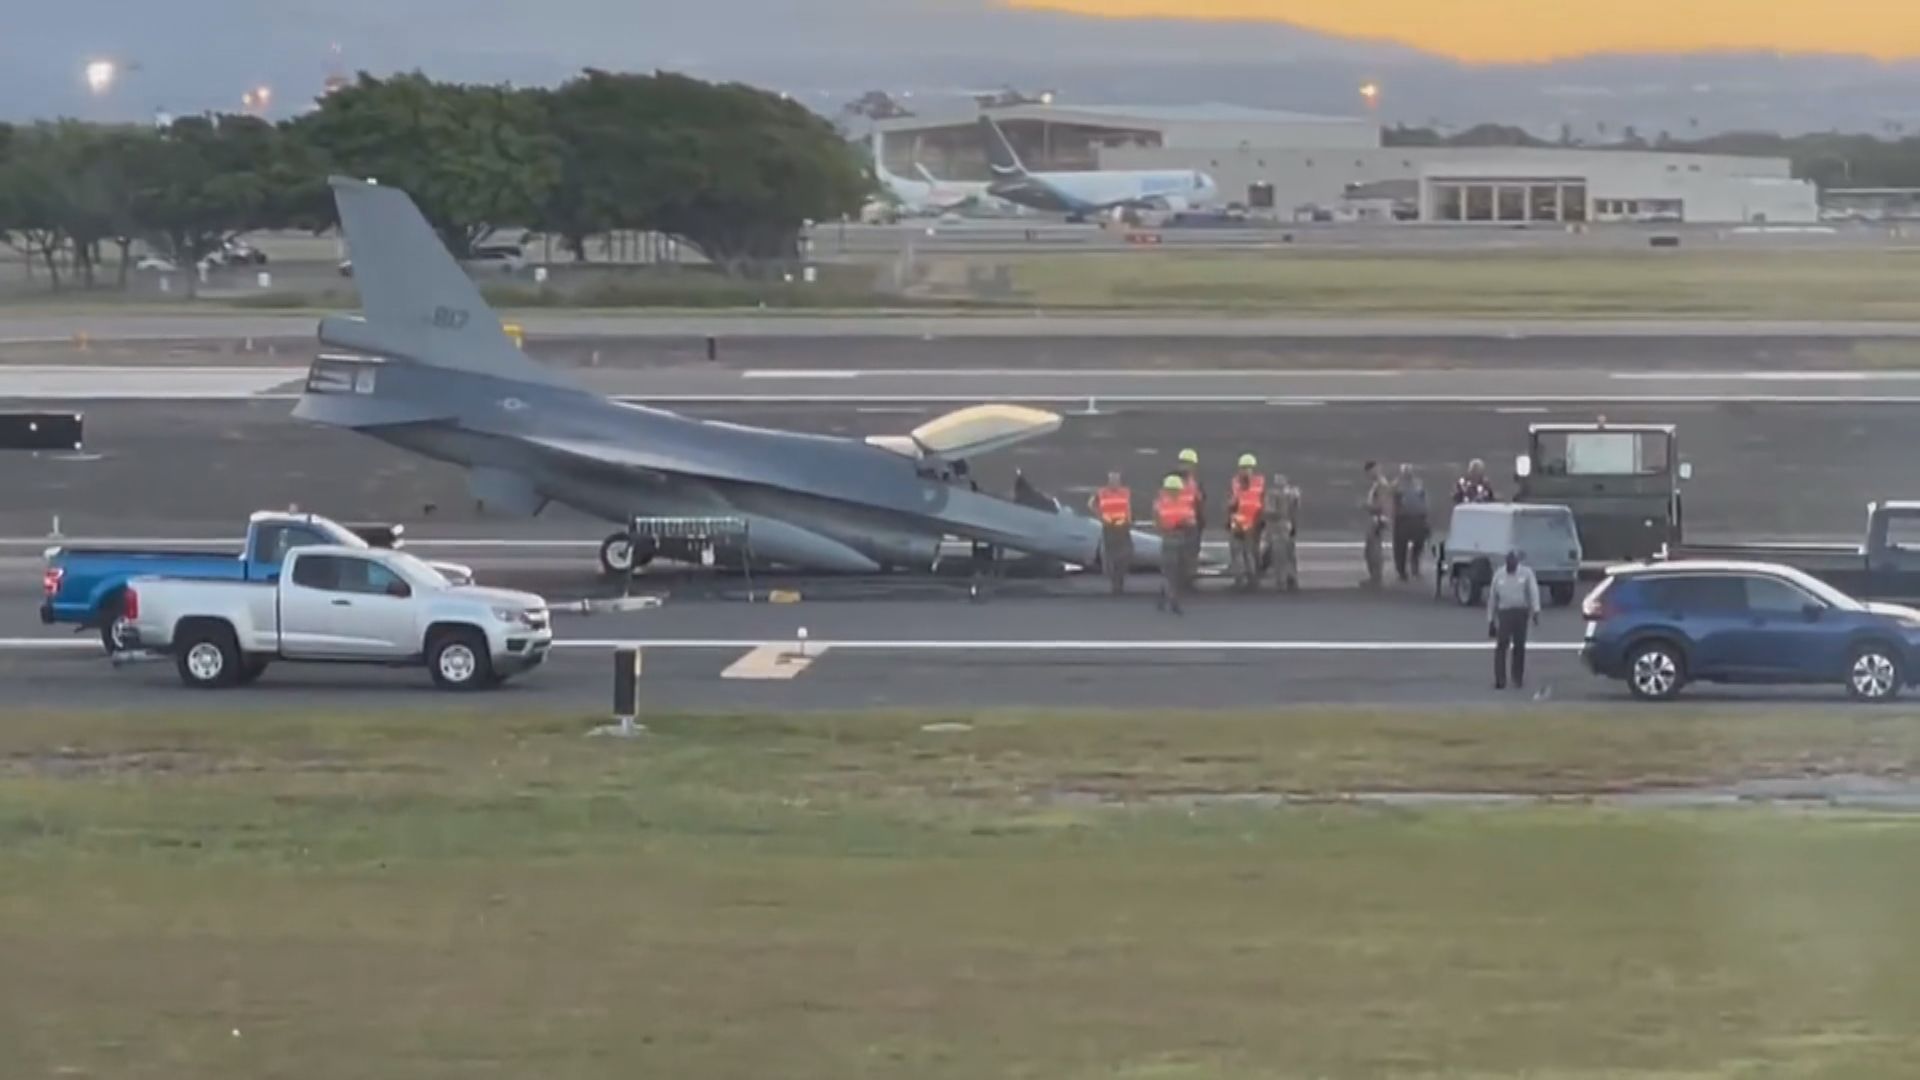 台軍F-16A戰機起落架故障急降夏威夷